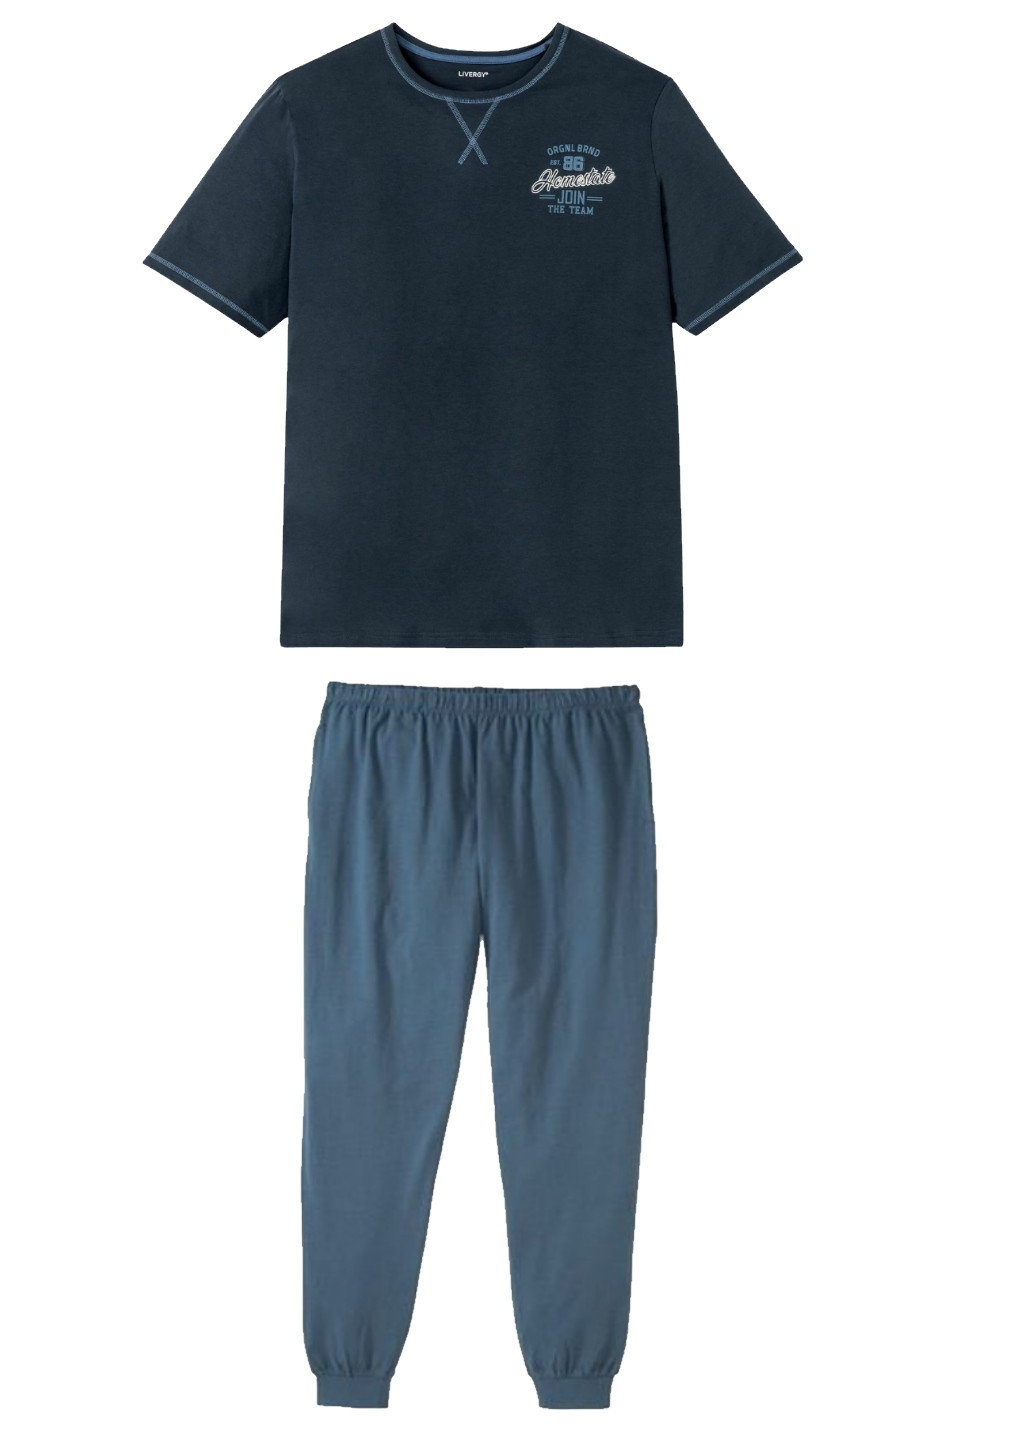 Піжама (футболка, штани) Livergy футболка + штани однотонна темно-синя домашня трикотаж, бавовна